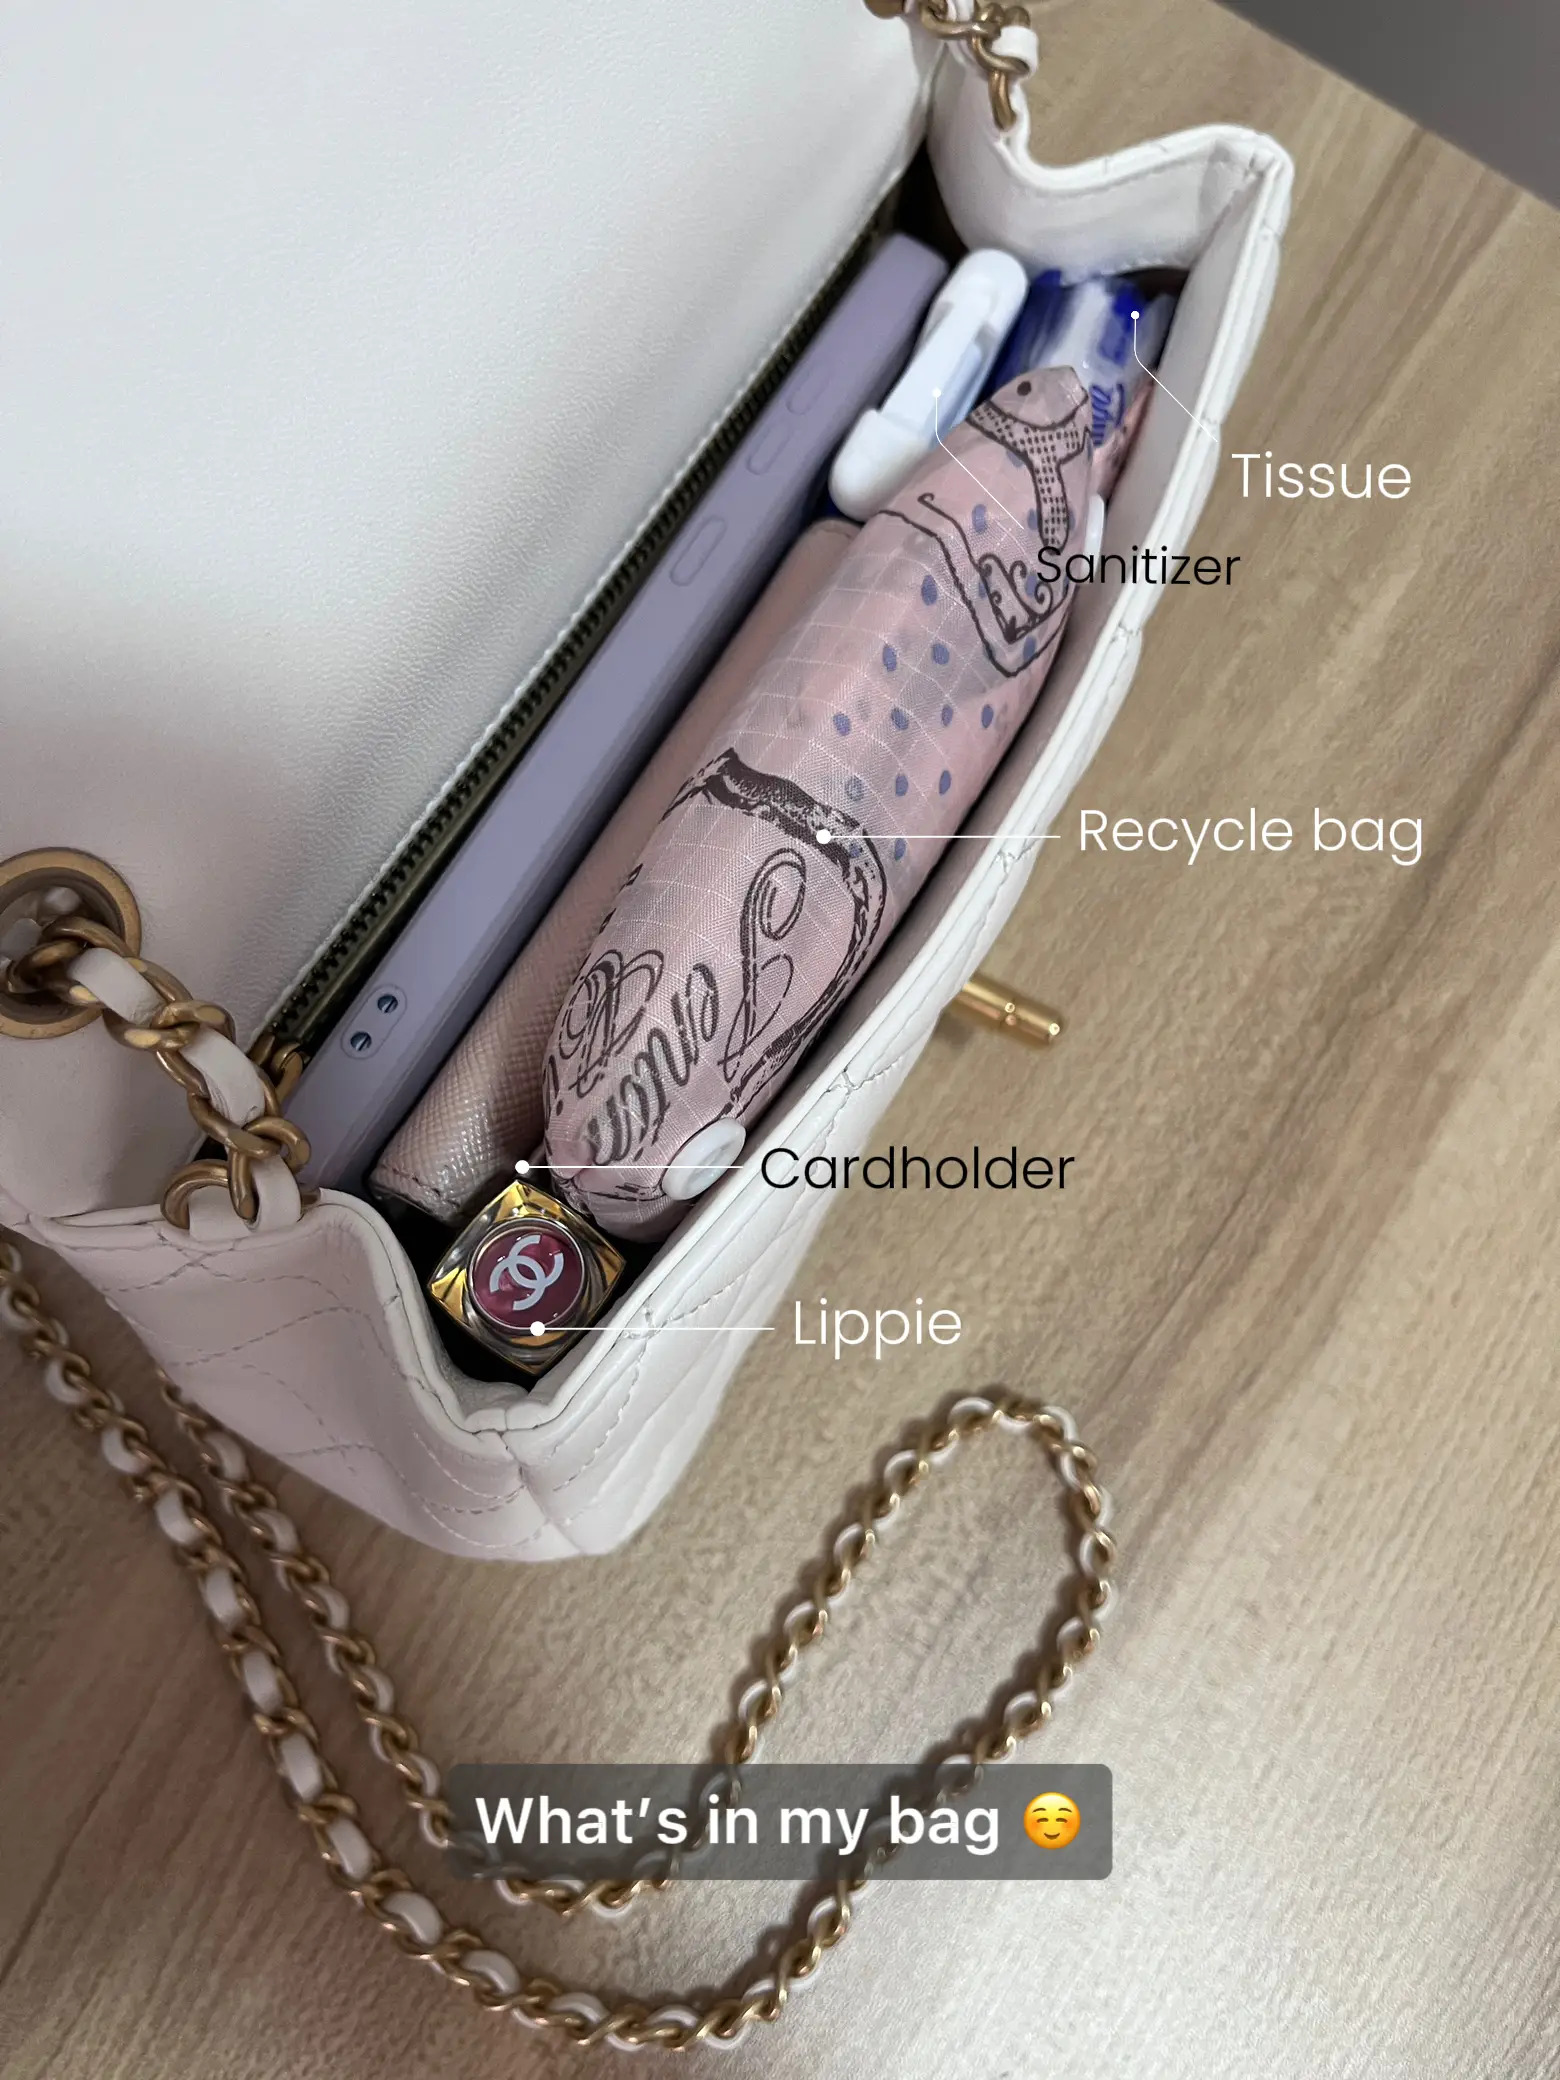 Is the Chanel Gabrielle Bag Worth It? - PurseBlog